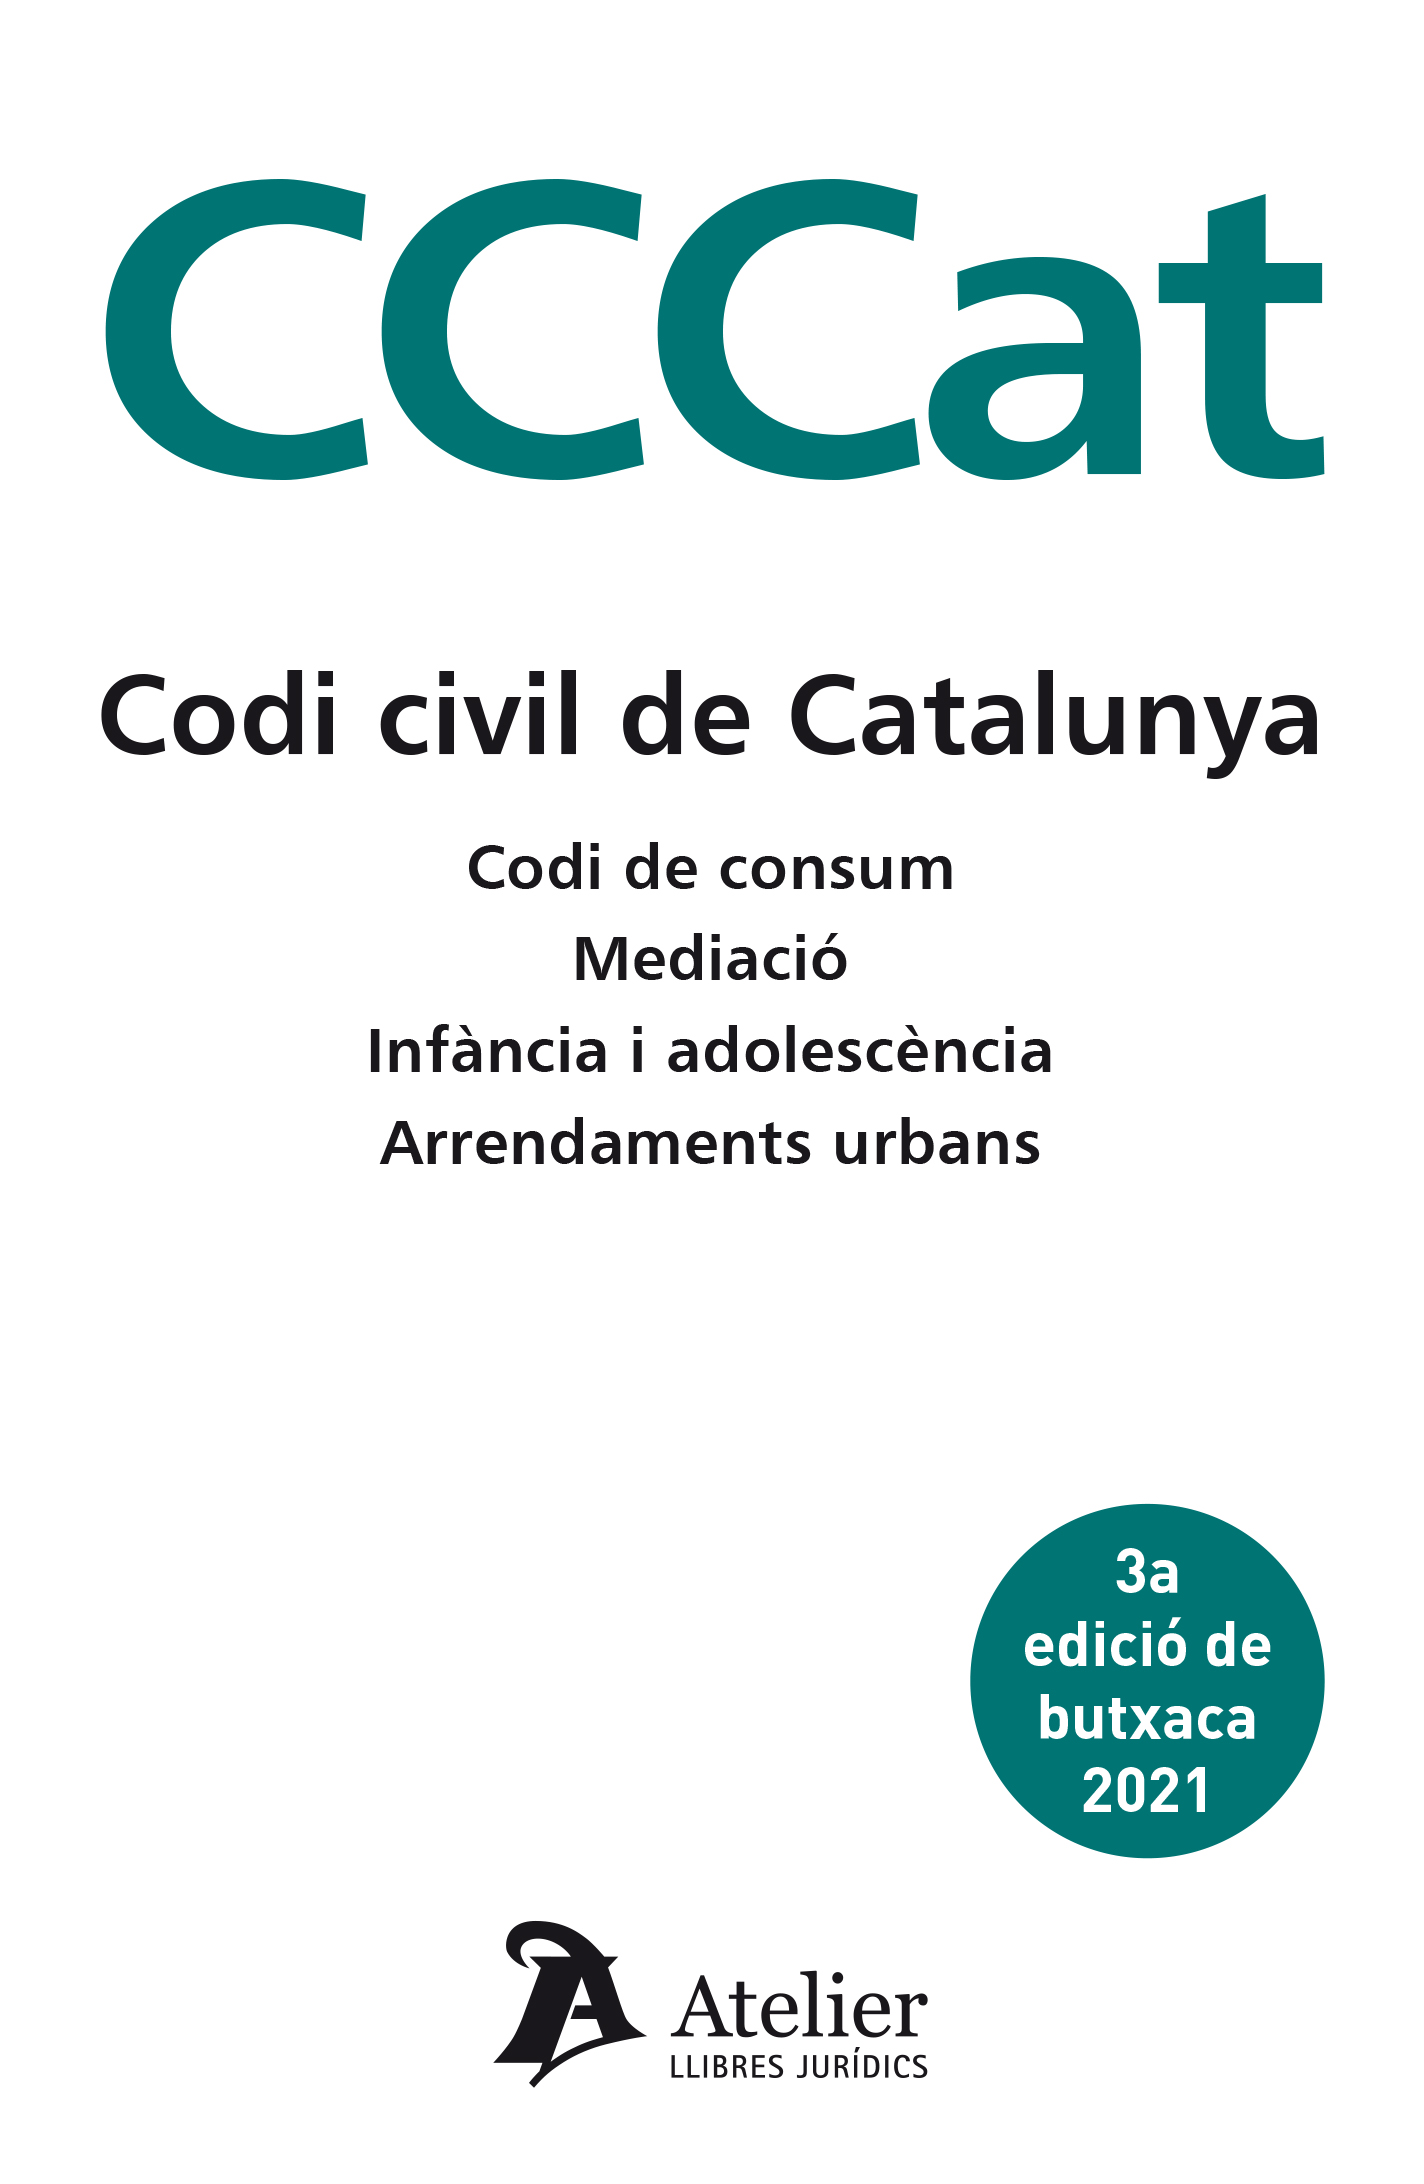 Codi Civil de Catalunya